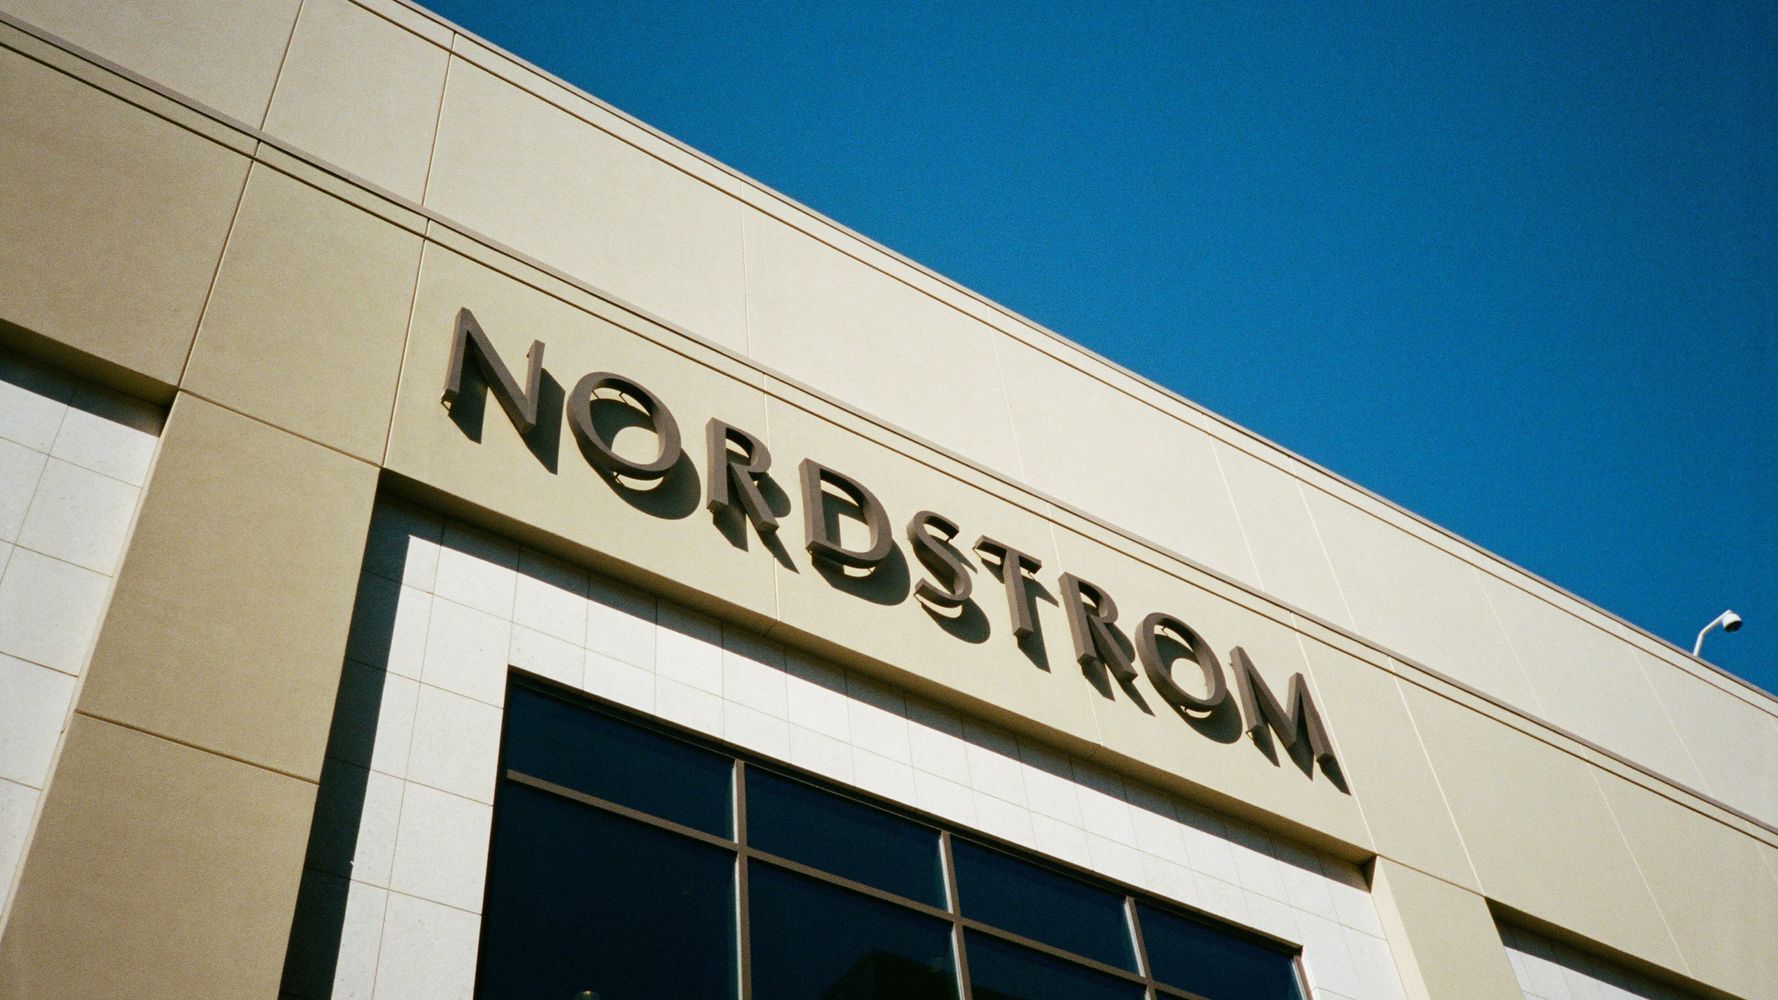 We Found Stores Like Nordstrom For Affordable Designer Brands